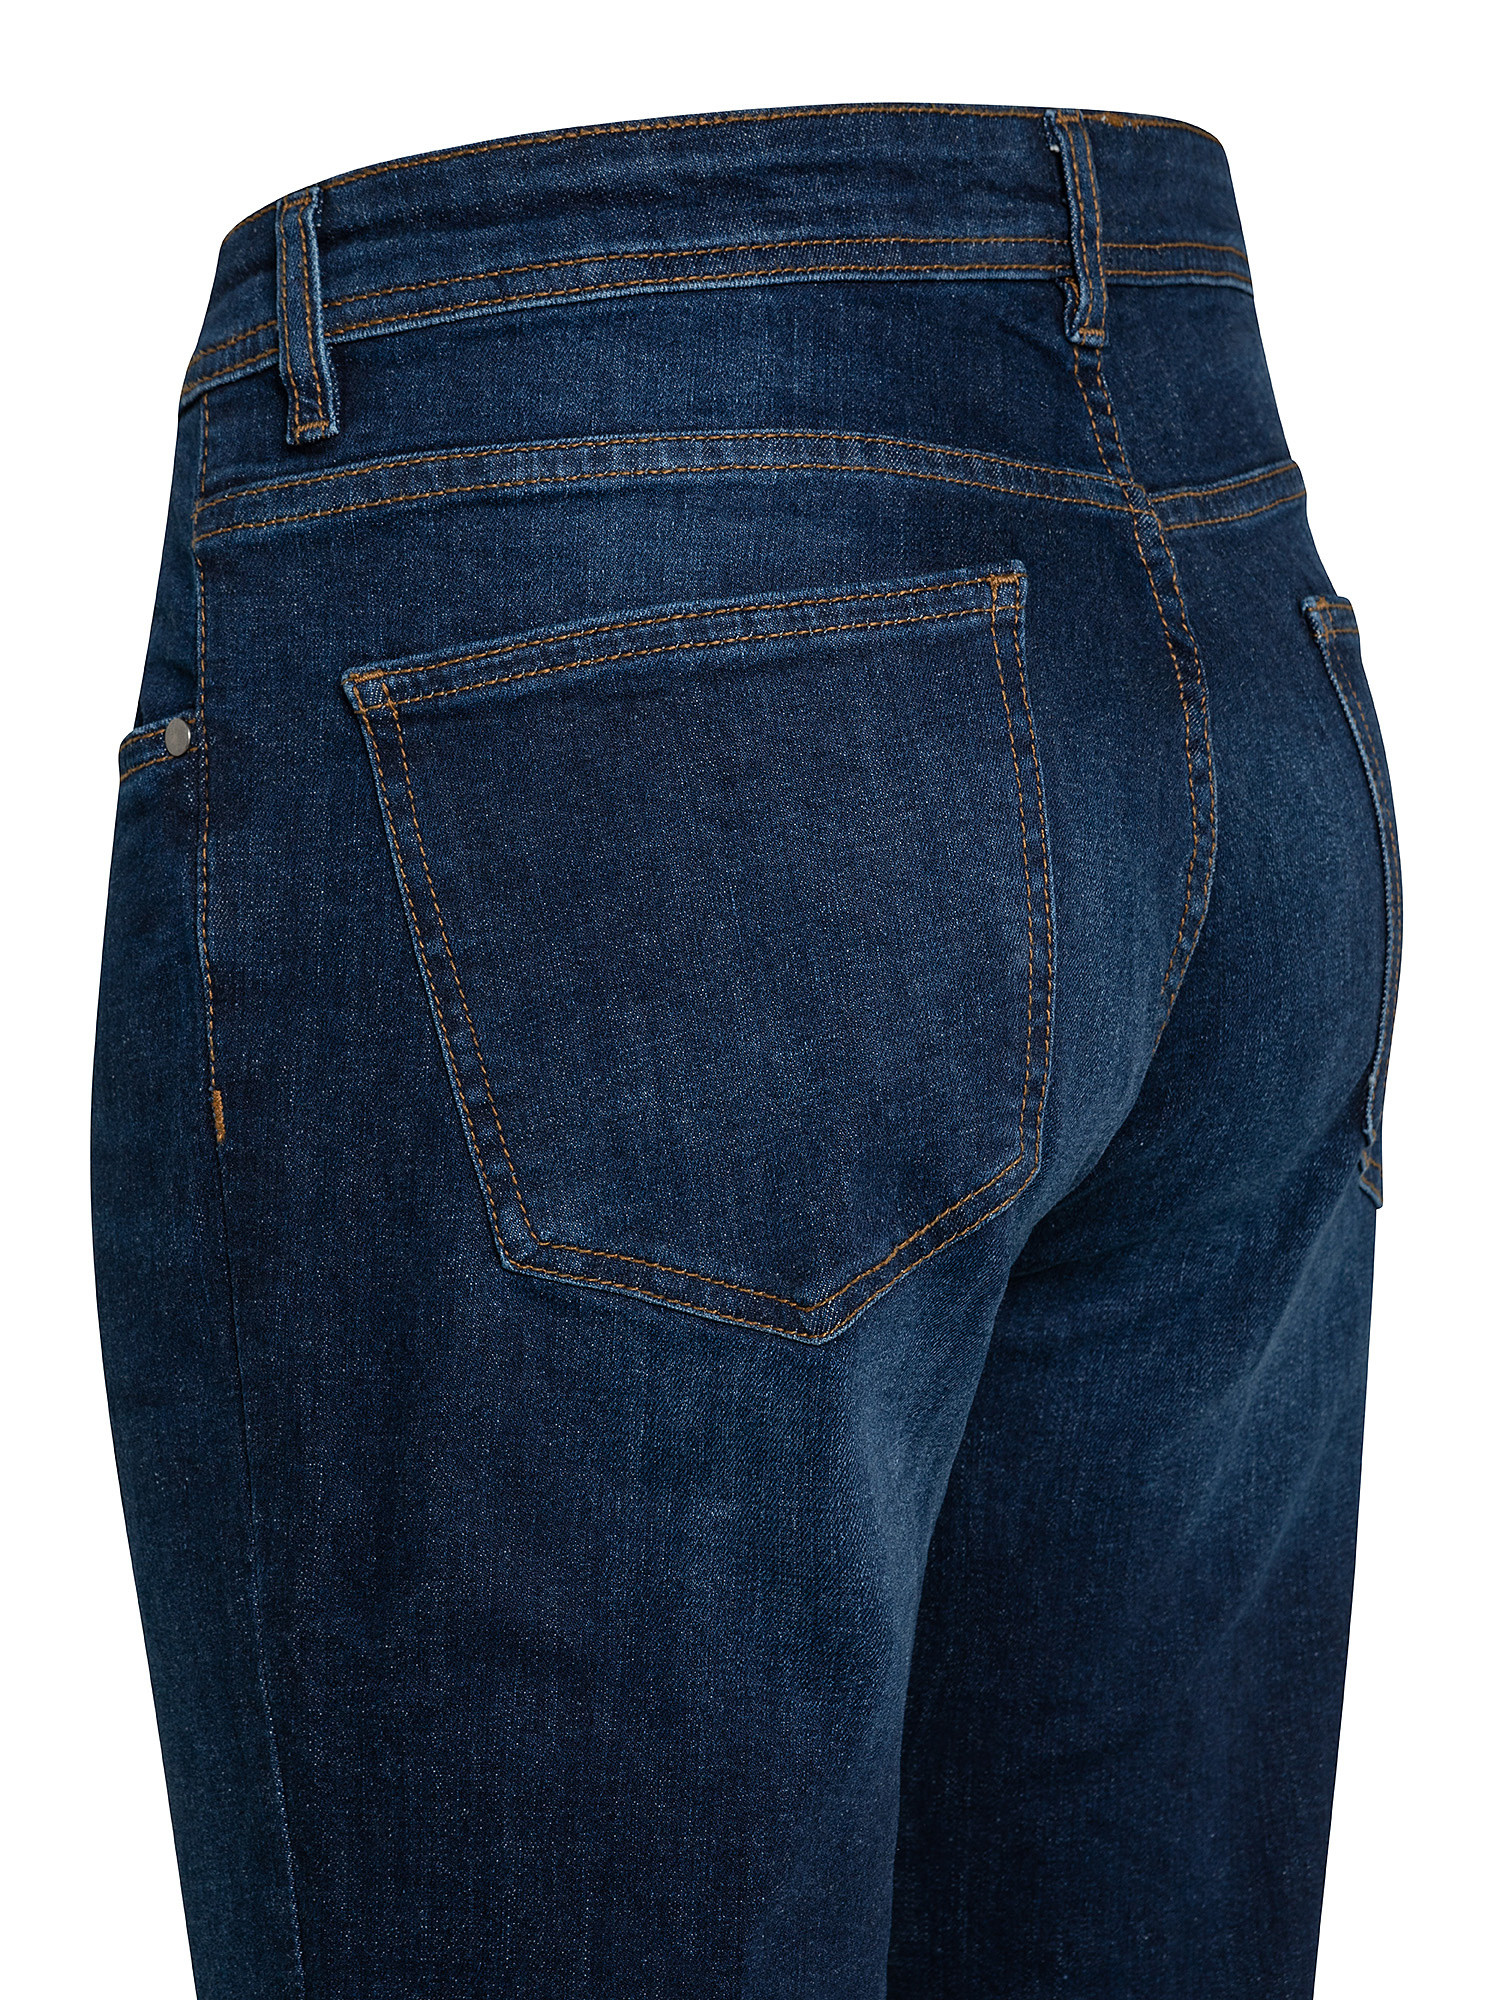 5-pocket slim stretch cotton jeans, Dark Blue, large image number 2